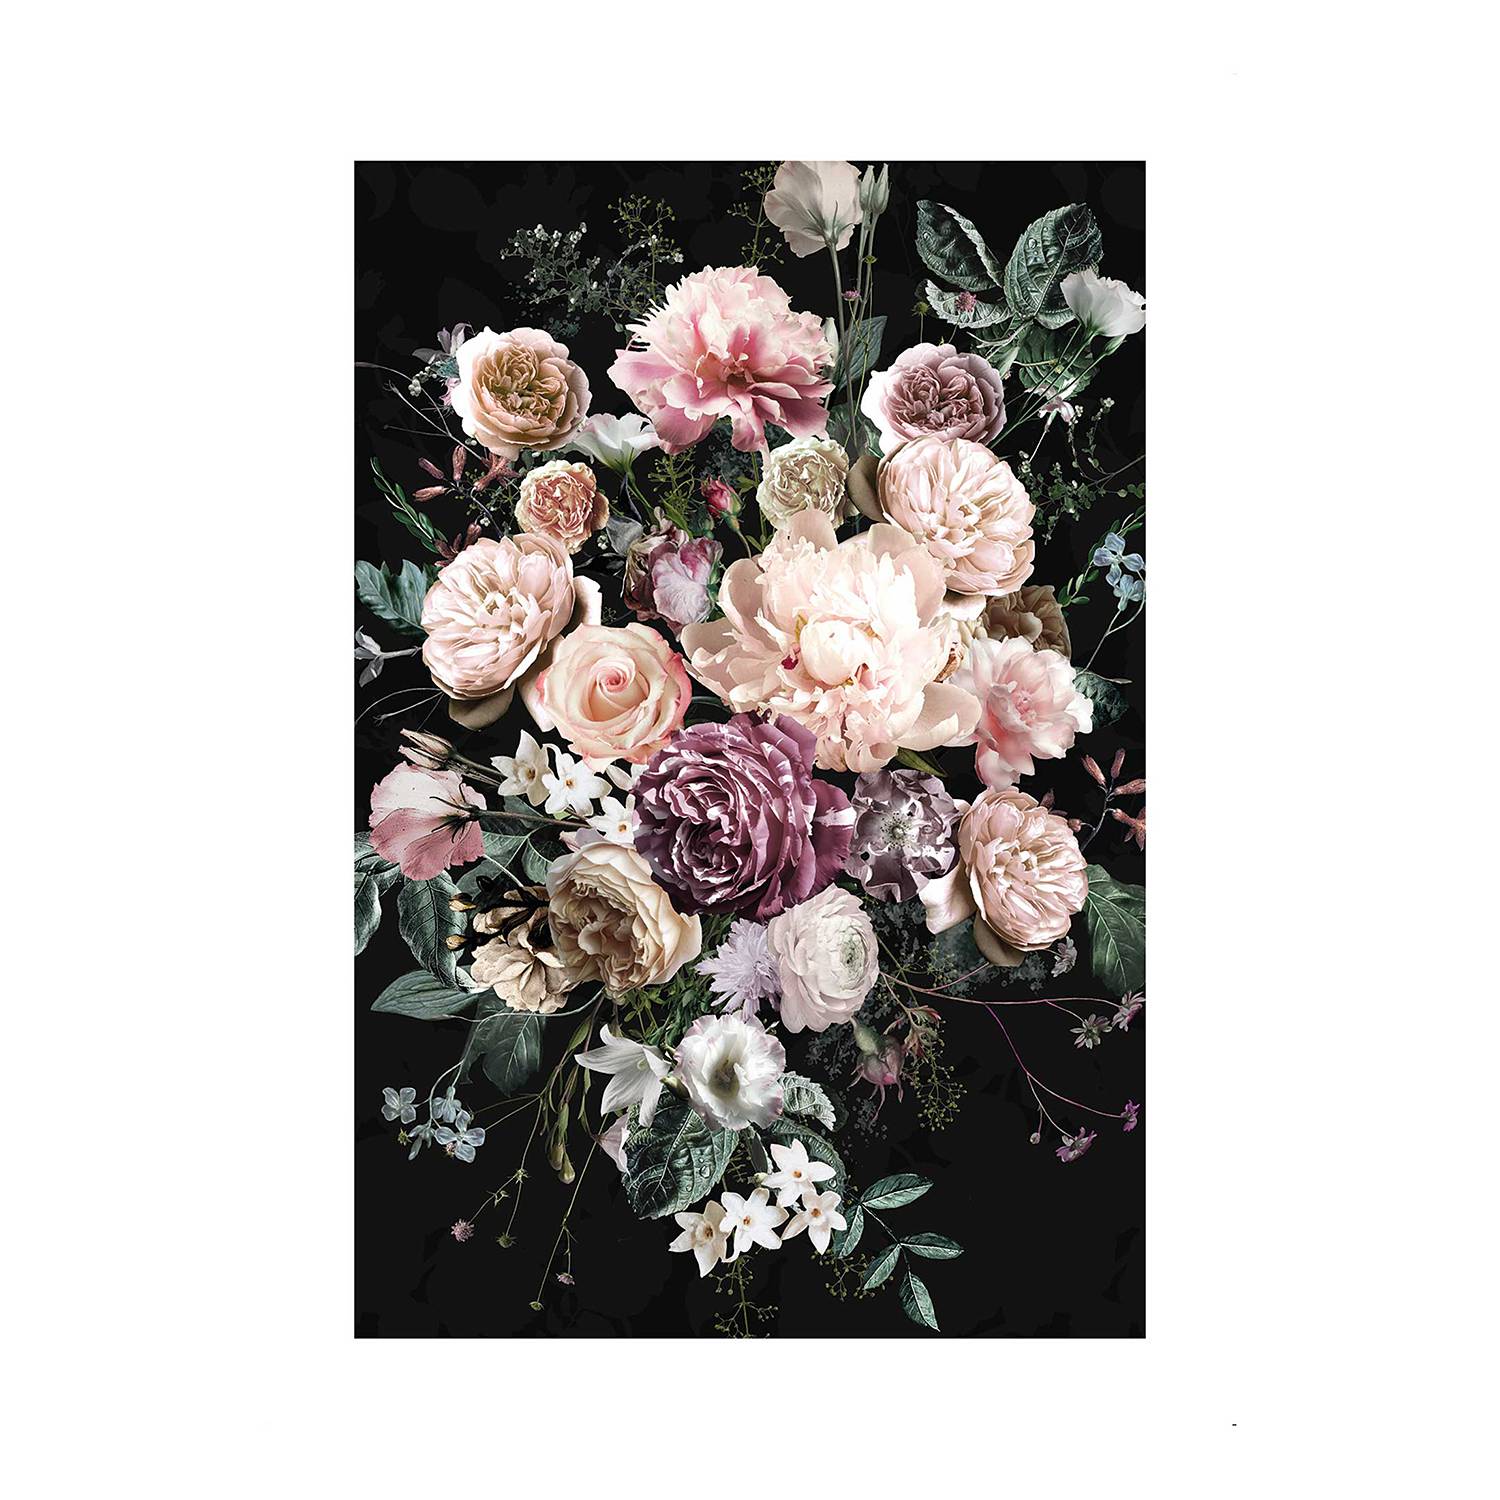 Wandbild Charming Bouquet kaufen | home24